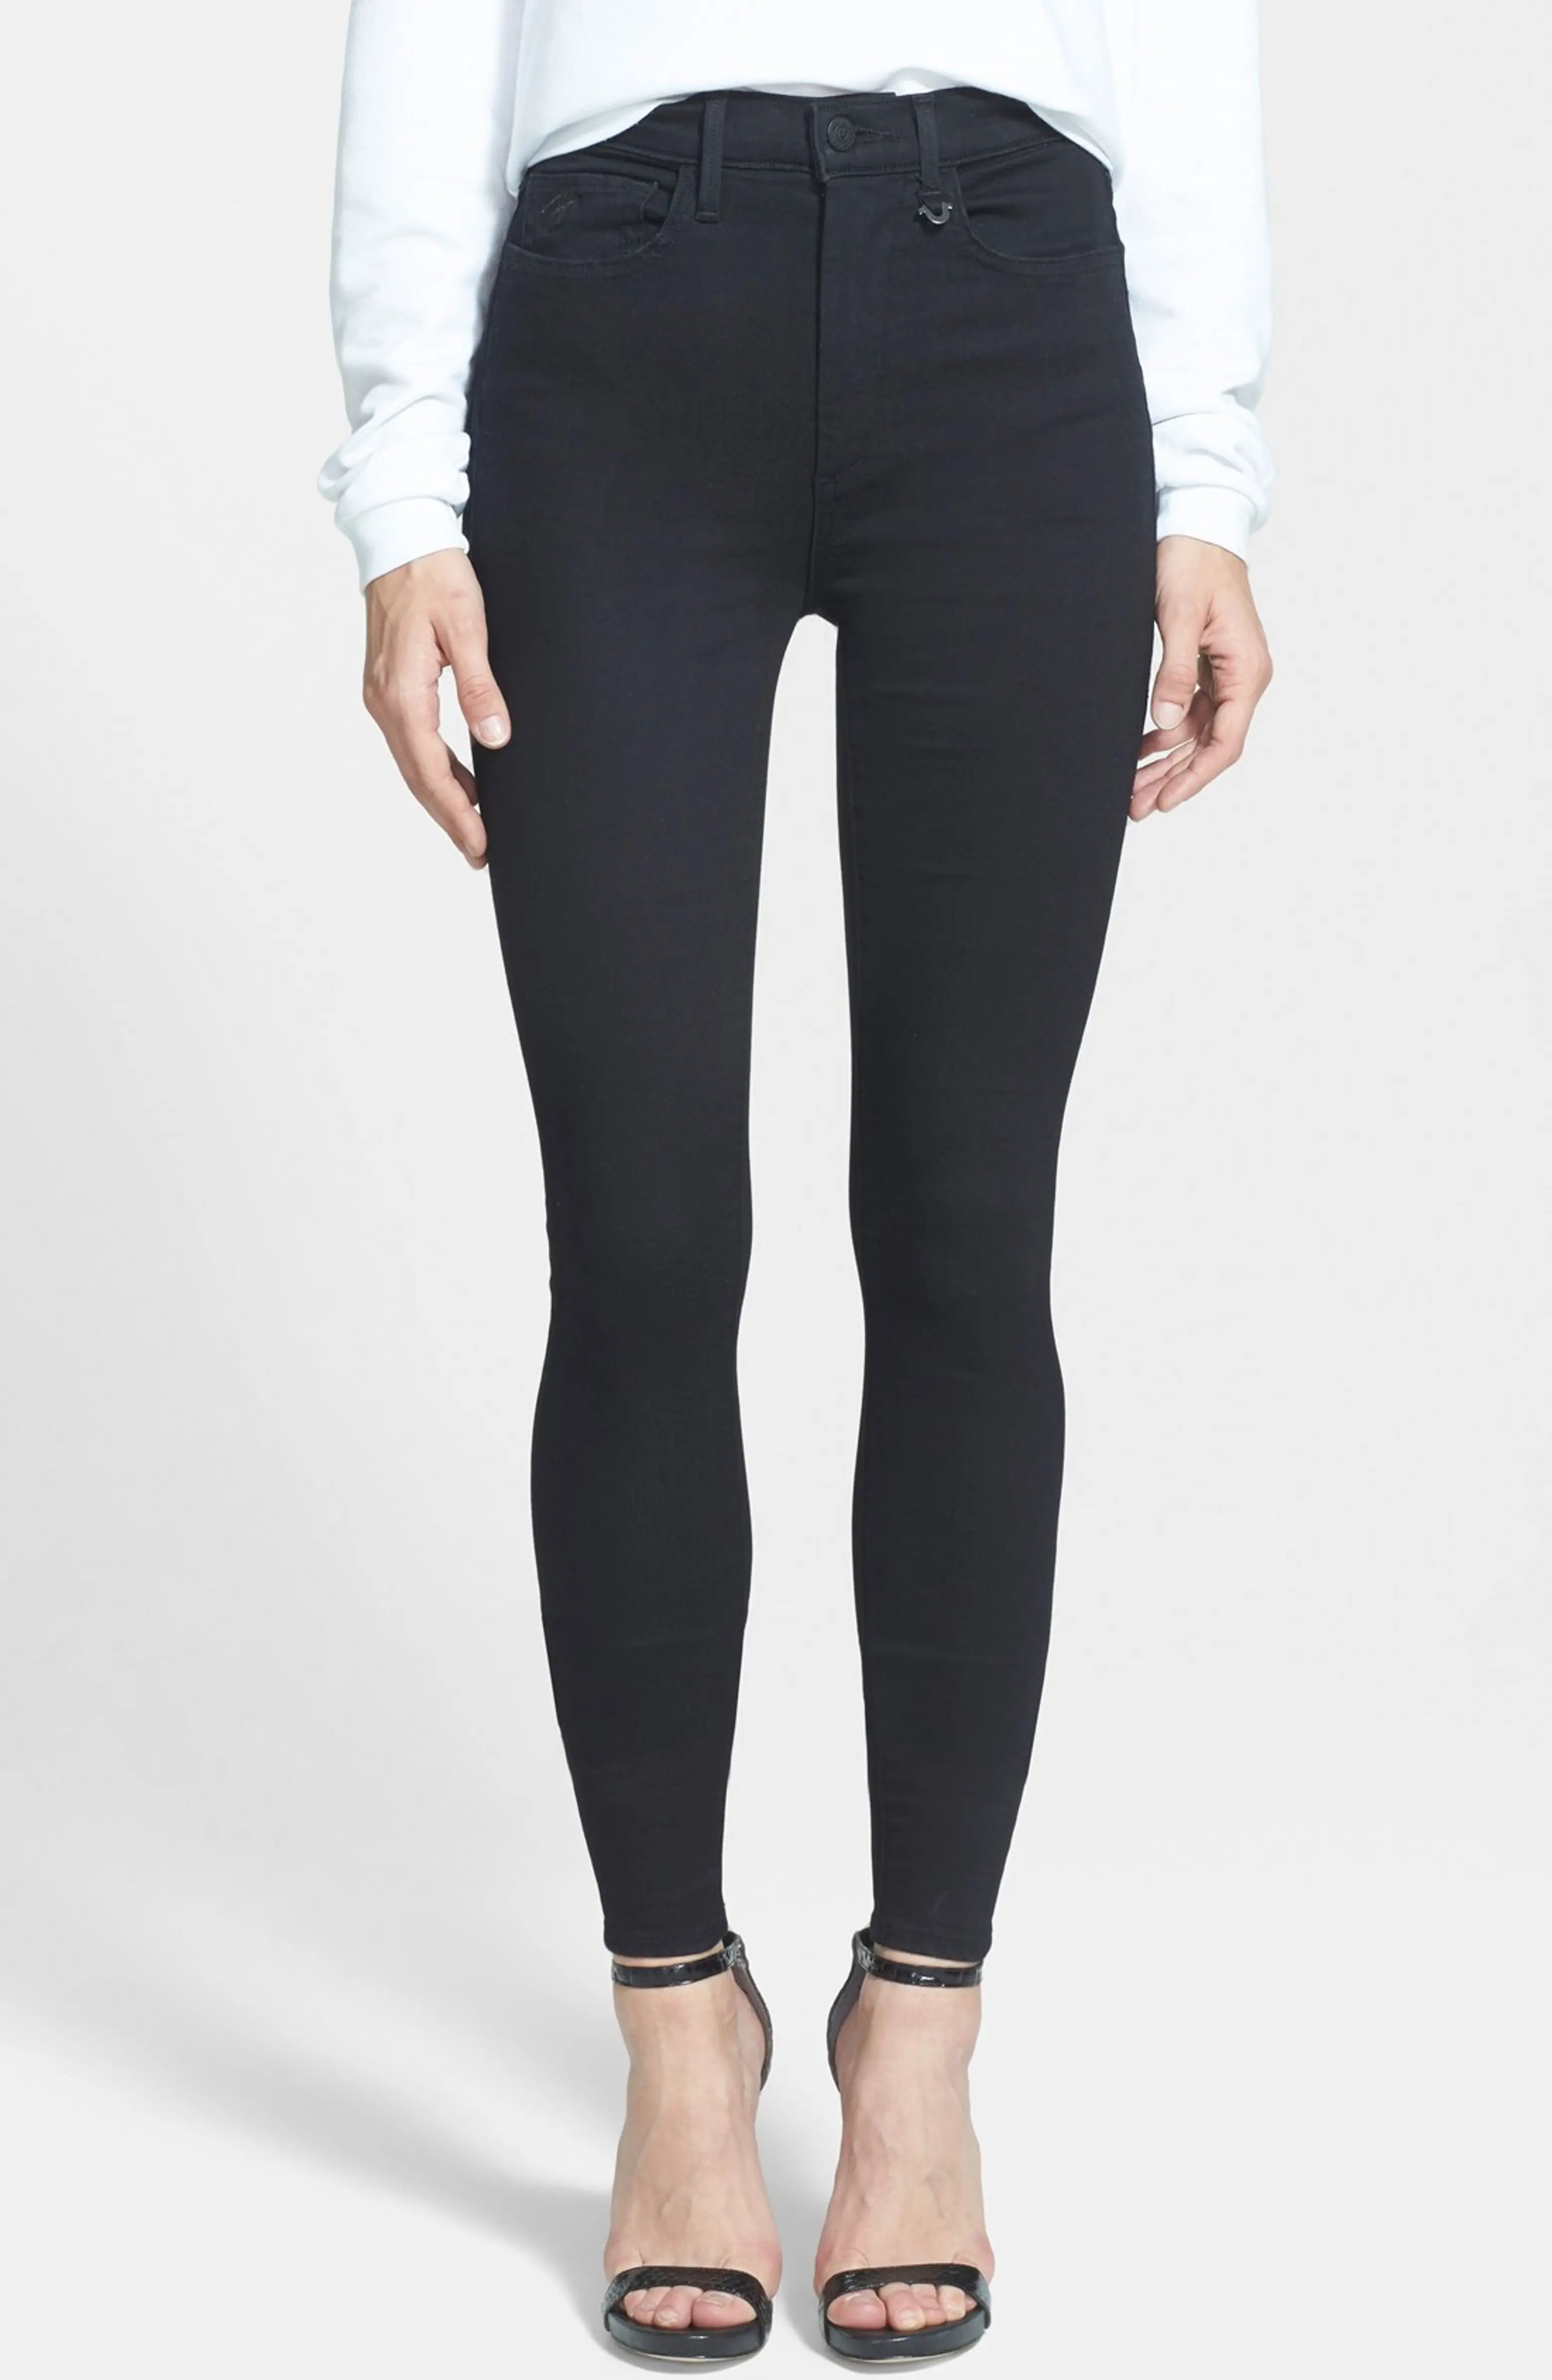 Joan Smalls for True Religion Brand Jeans High Rise Leggings | Nordstrom